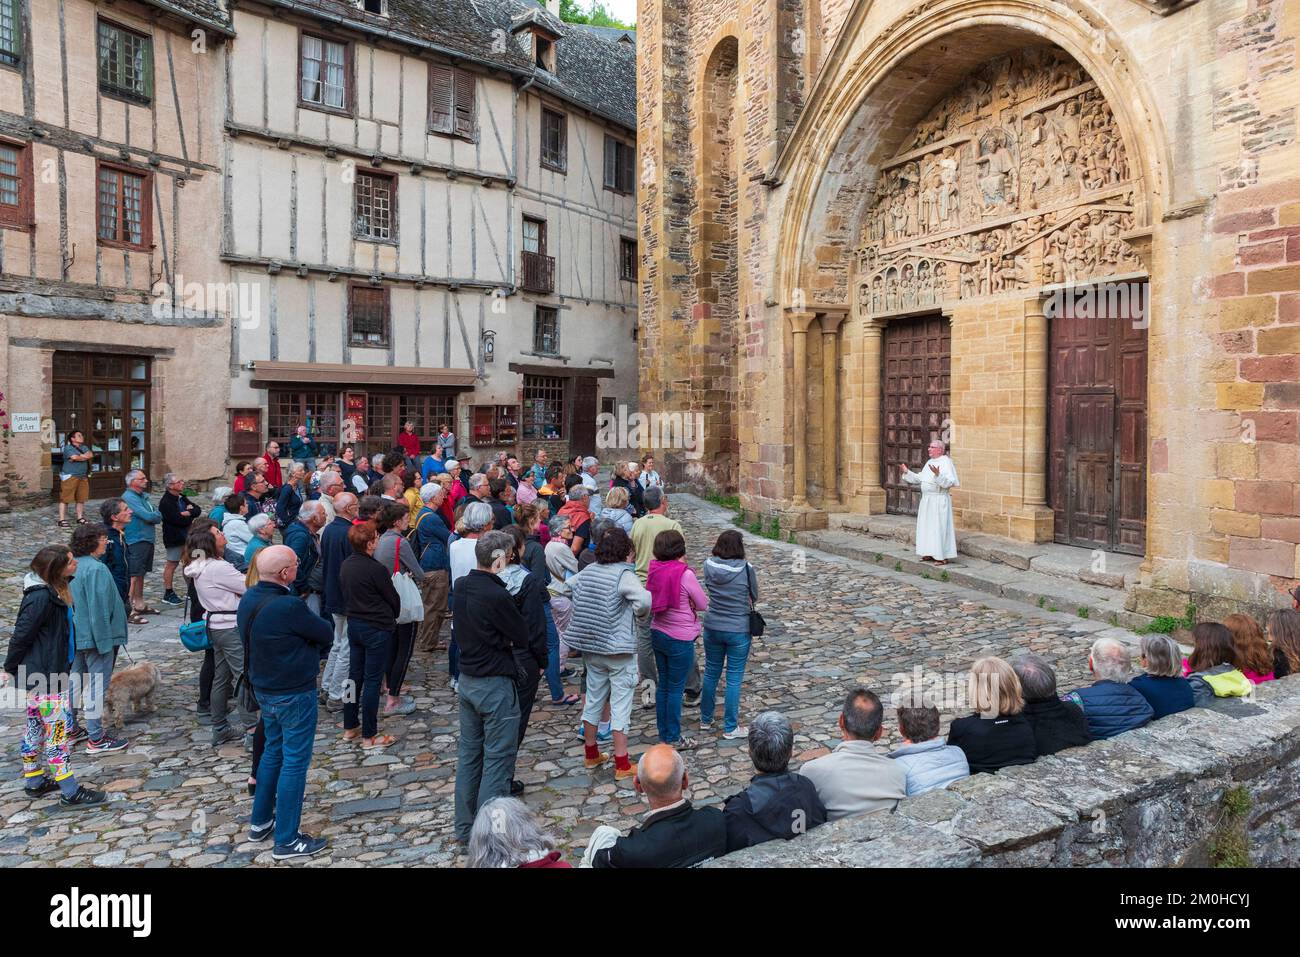 Frankreich, Aveyron, Conques, eines der schönsten Dörfer Frankreichs, Bühne auf dem Weg nach Compostela, Sainte Foy Romanesque Abbey, das von der UNESCO zum Weltkulturerbe erklärt wurde, beschreibt Bruder Jean Daniel das Tympanum des Letzten Gerichts Stockfoto